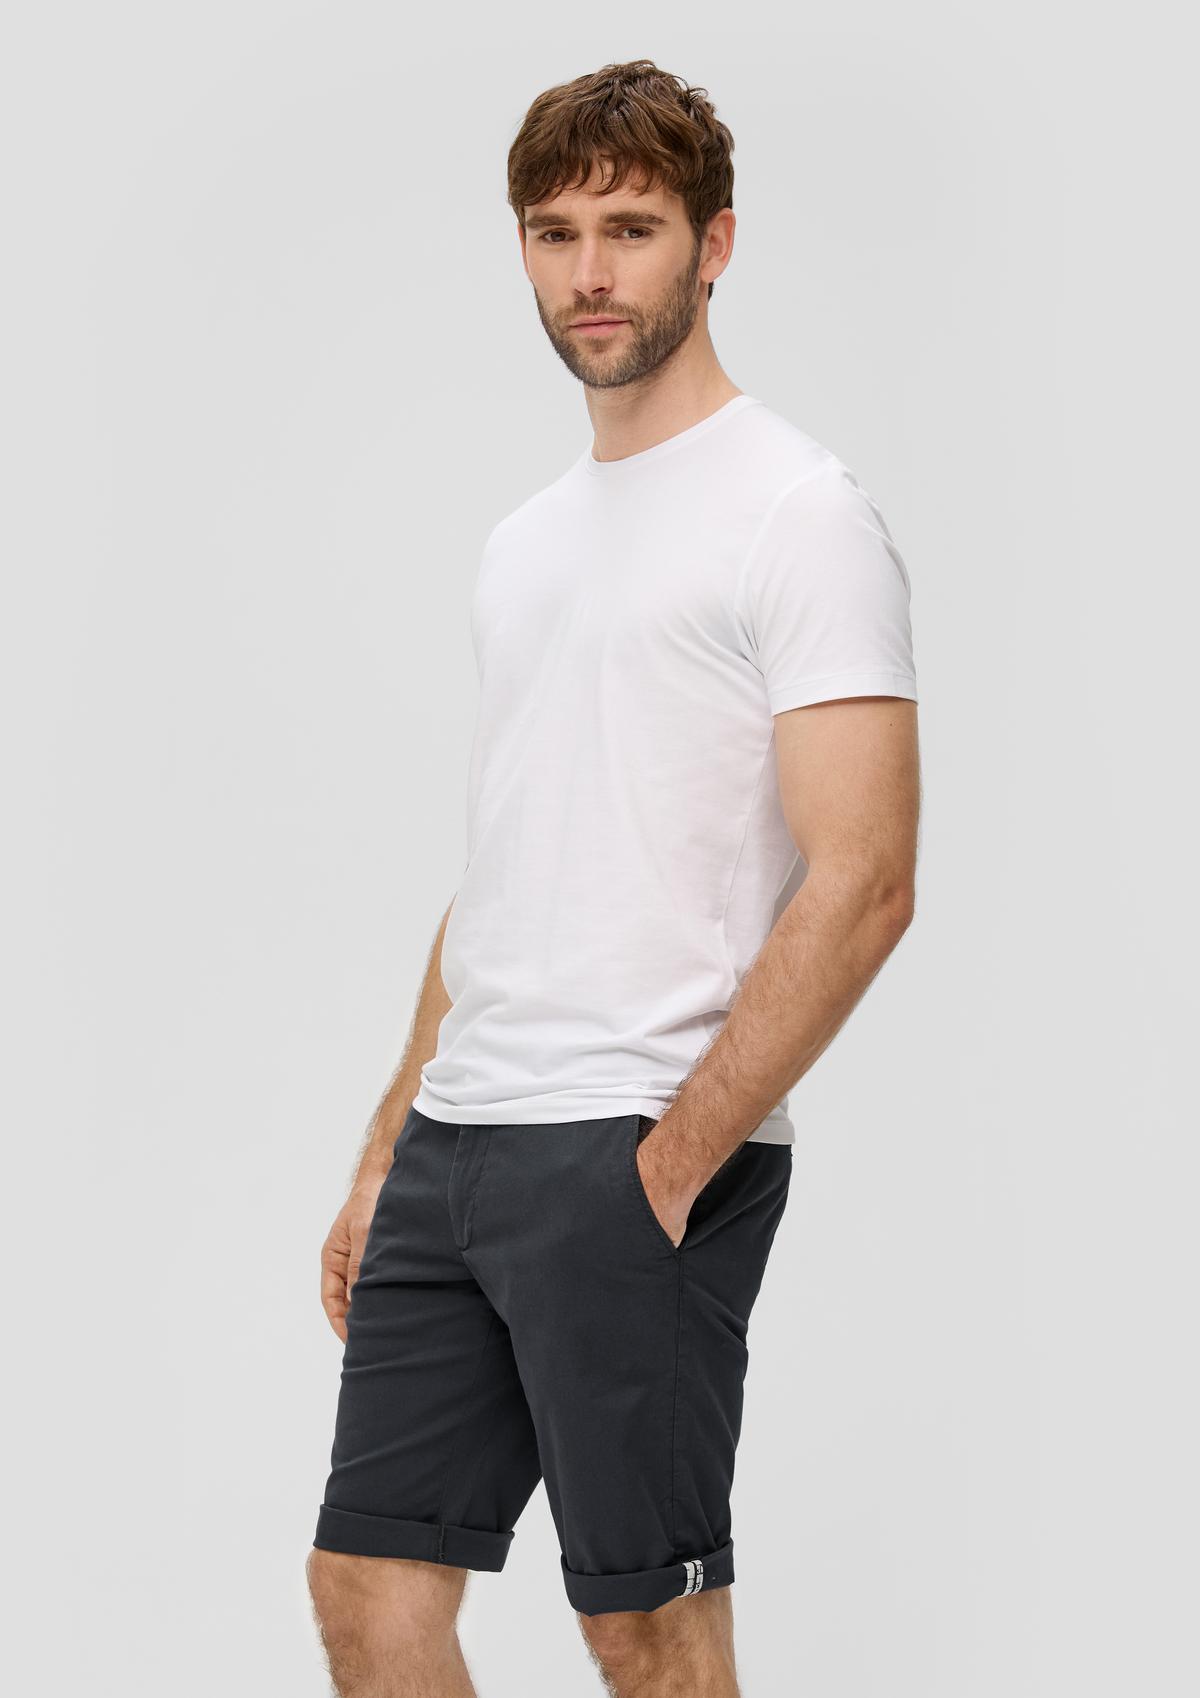 s.Oliver Bermuda jeans hlače Phoenix/kroj Regular Fit/Mid Rise/ravne hlačnice